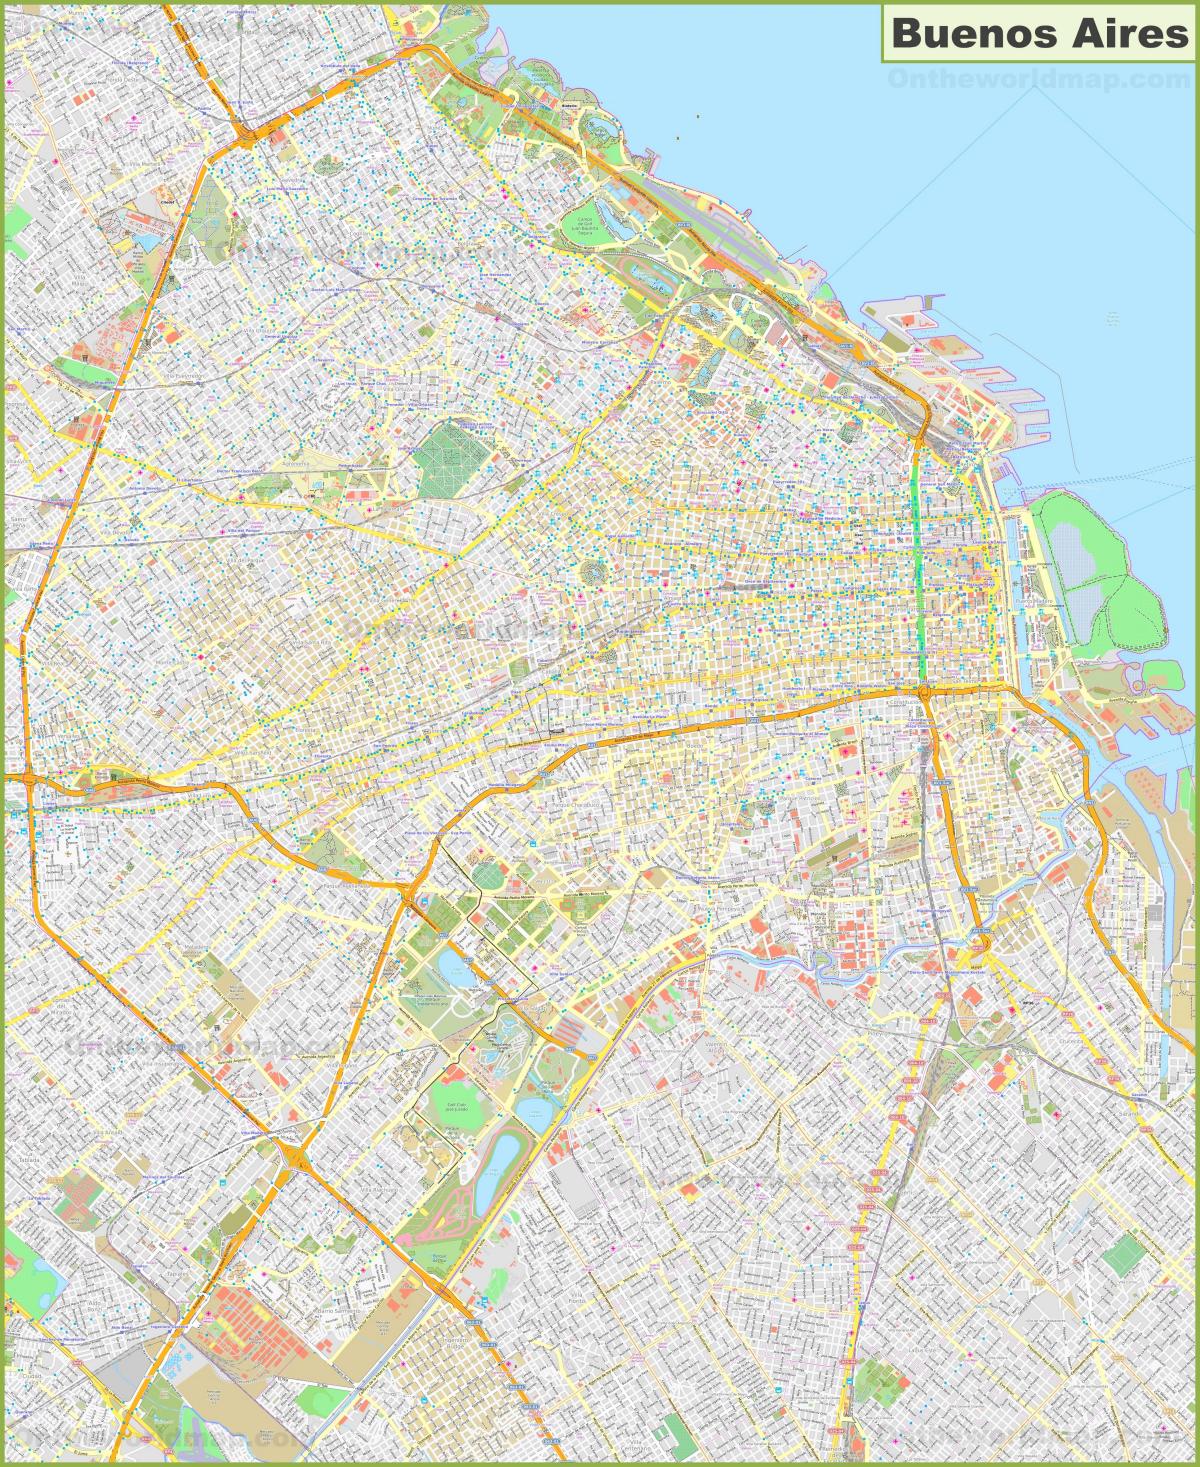 Buenos Aires stratenplan